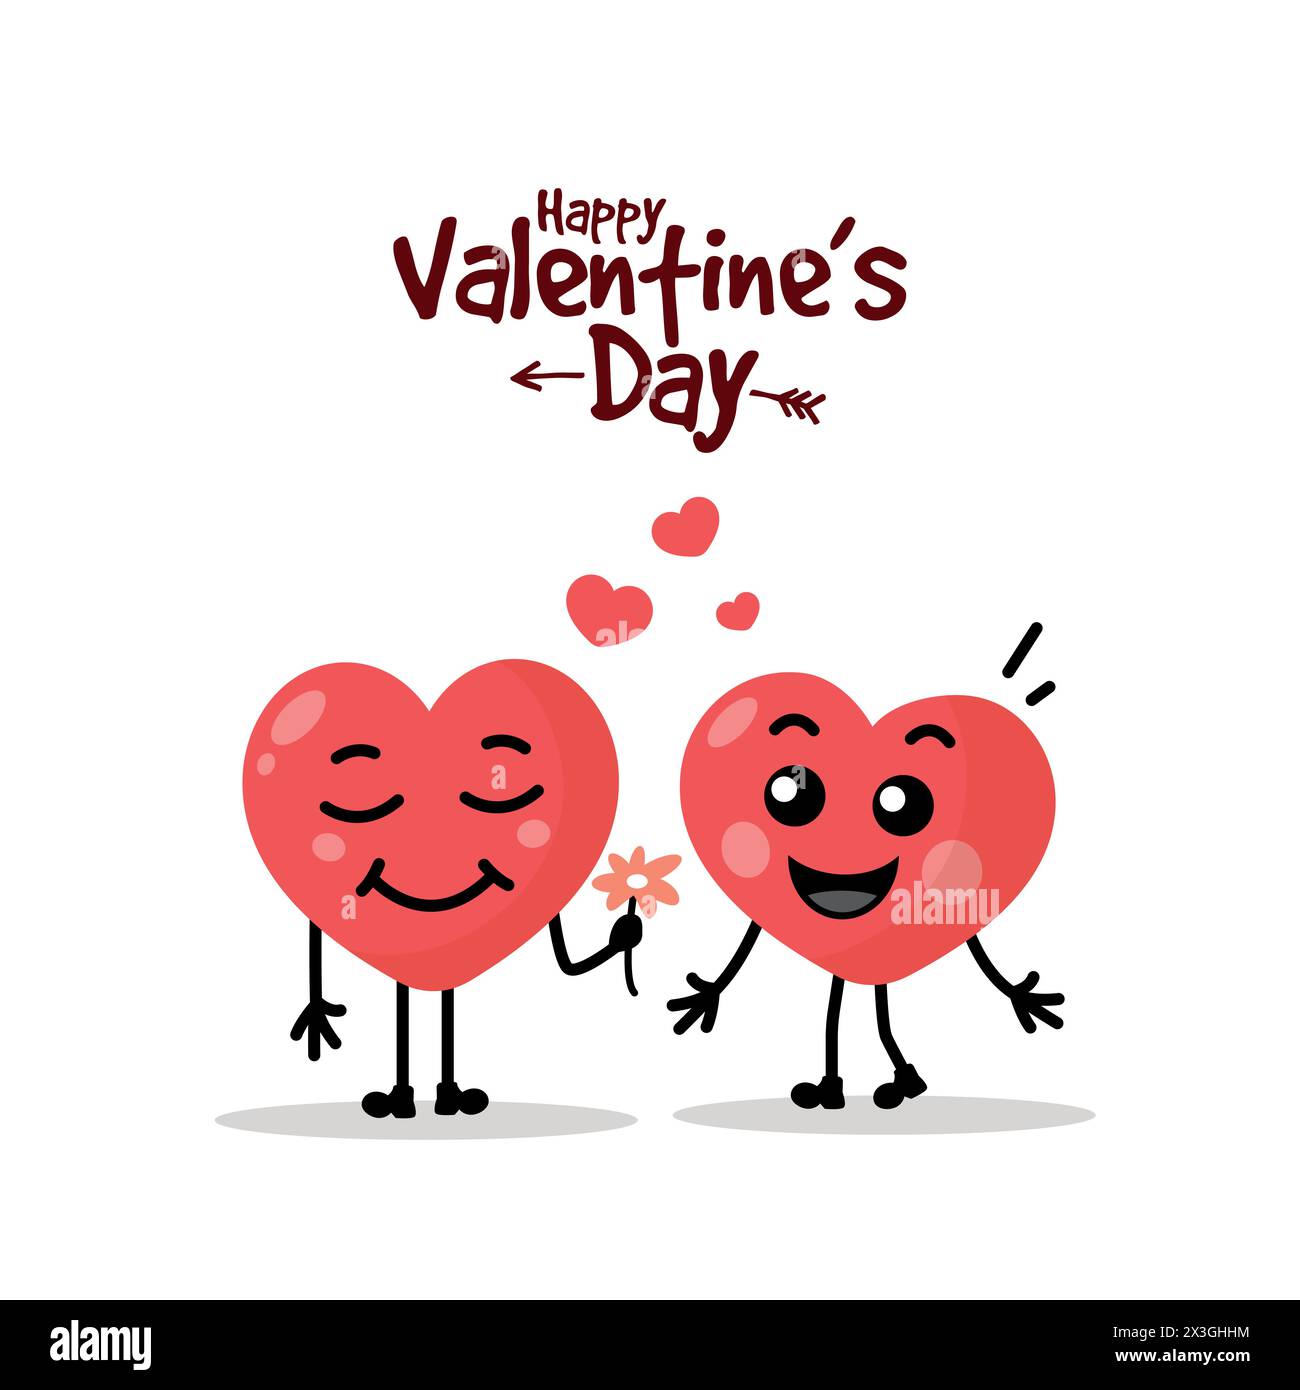 Zwei fröhliche Herzen auf weißem Hintergrund. Cartoon Heart Kollektion. Frohes Valentinstag-Banner, Poster, Postkarte, Flyer. Vektordarstellung. Stock Vektor